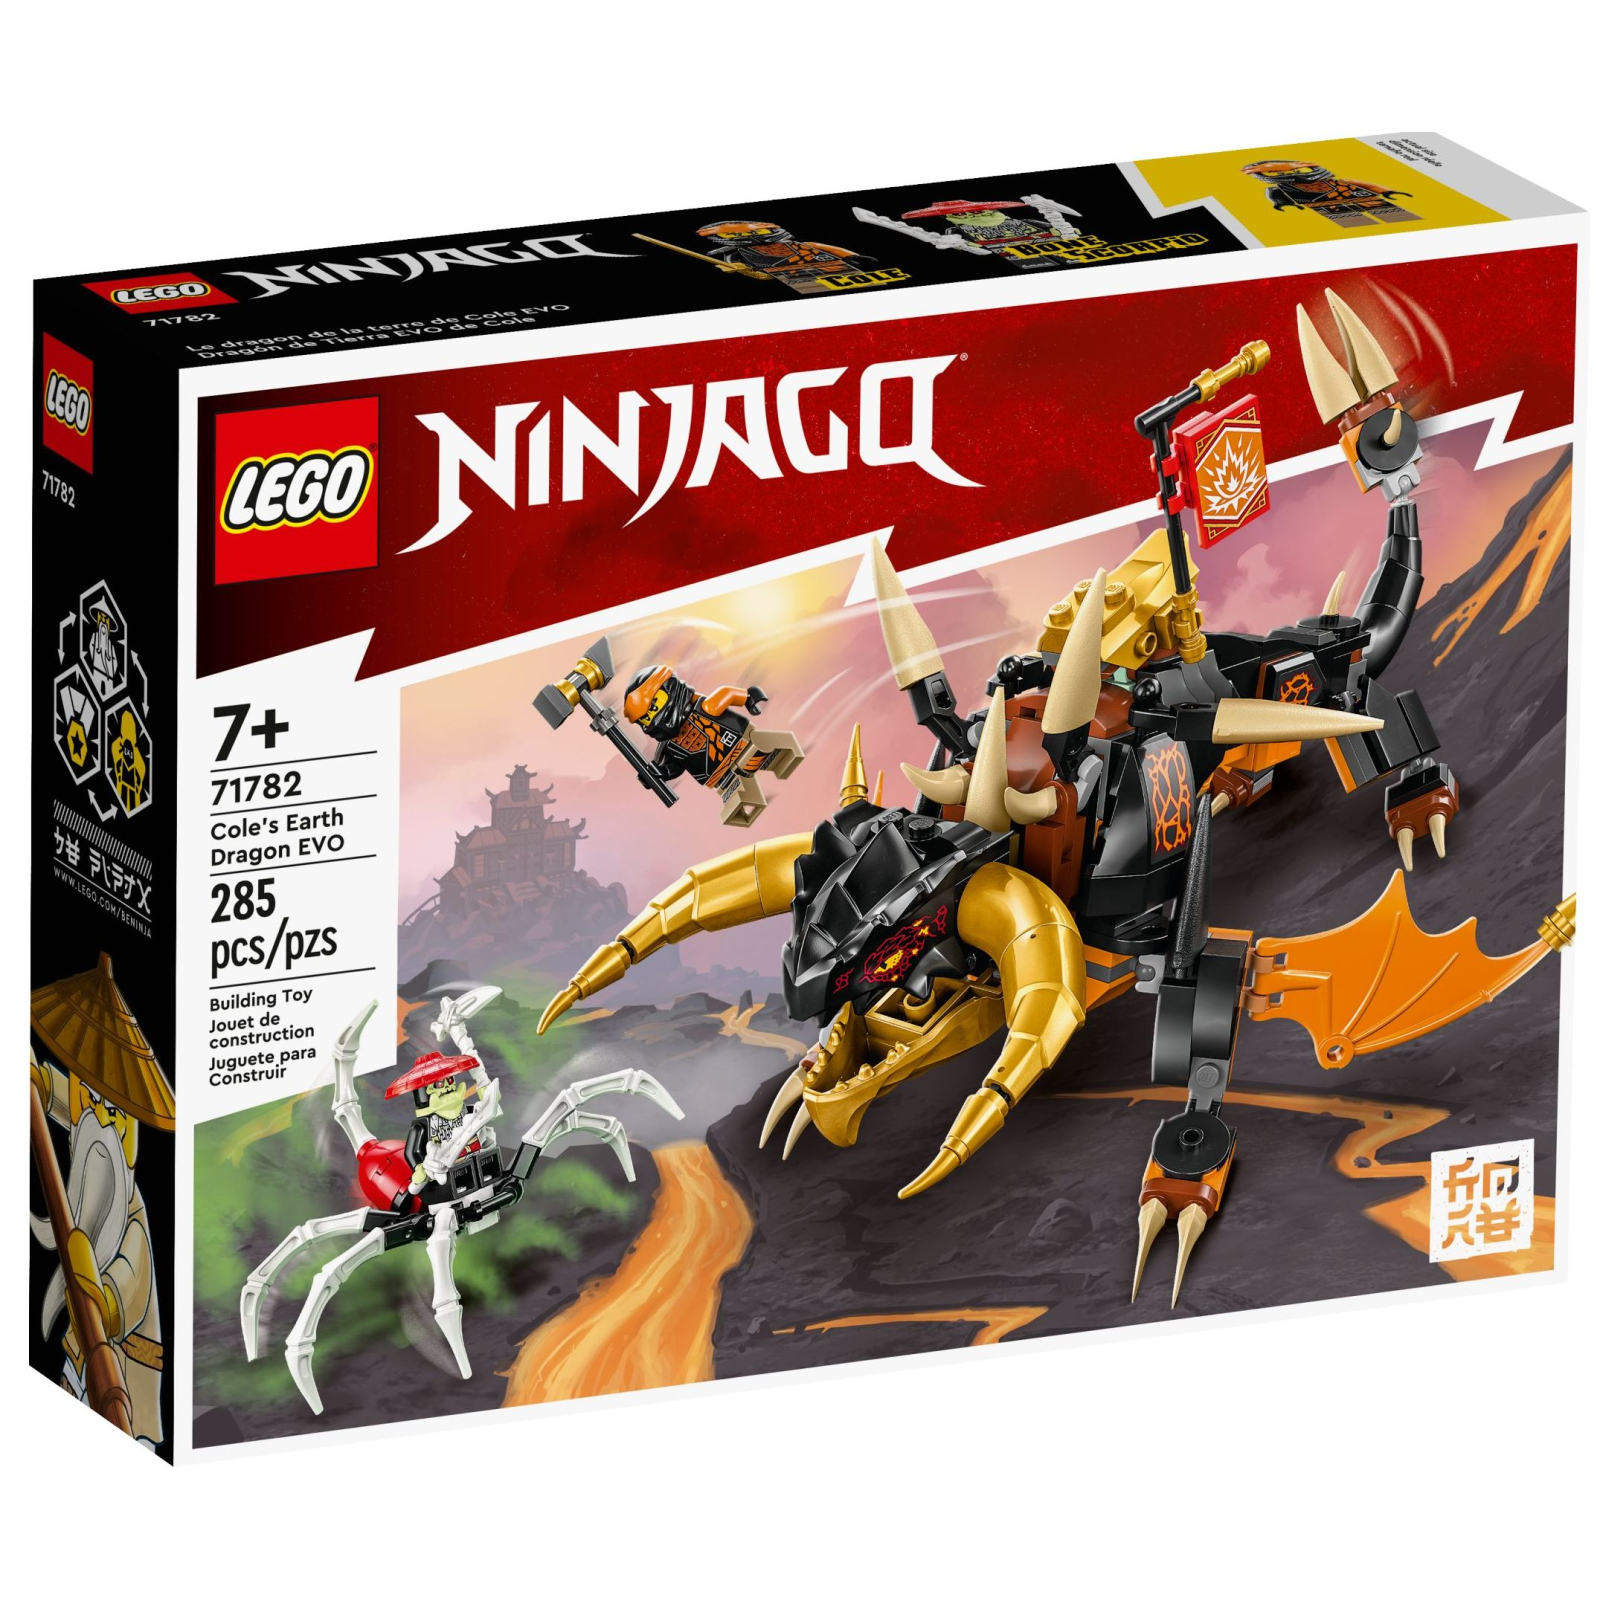 Конструктор LEGO Ninjago Земляной дракон Коула EVO 285 деталей (71782)